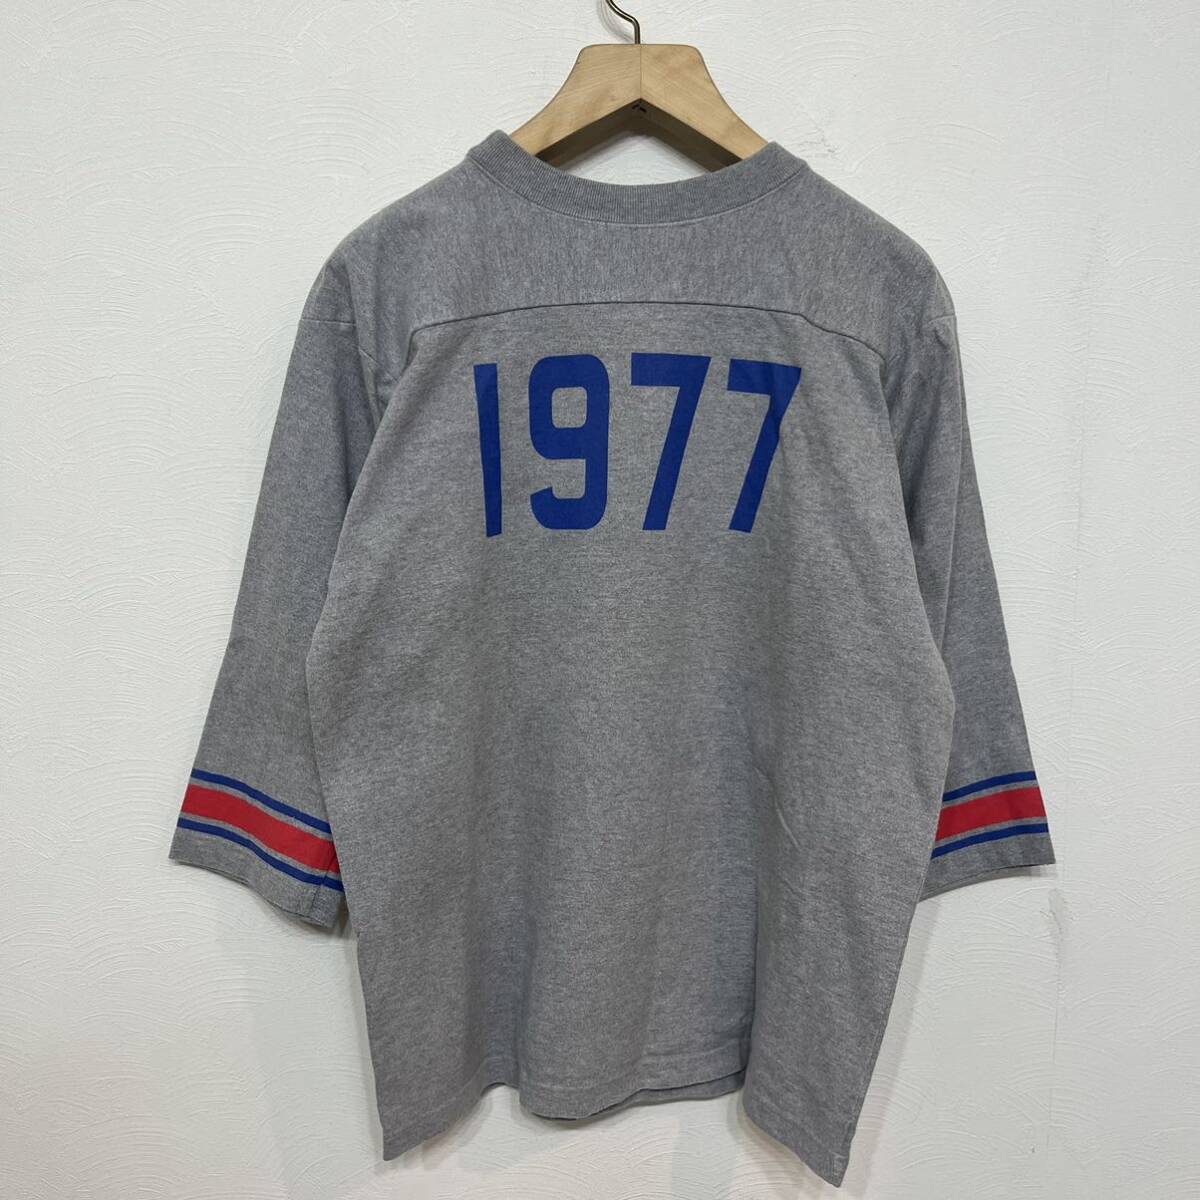 h403 2015 年 リムジンインターナショナル バックドロップ フットボール シャツ ビッグ サイズ XL グレー 7分 football 1977 shirt_画像4